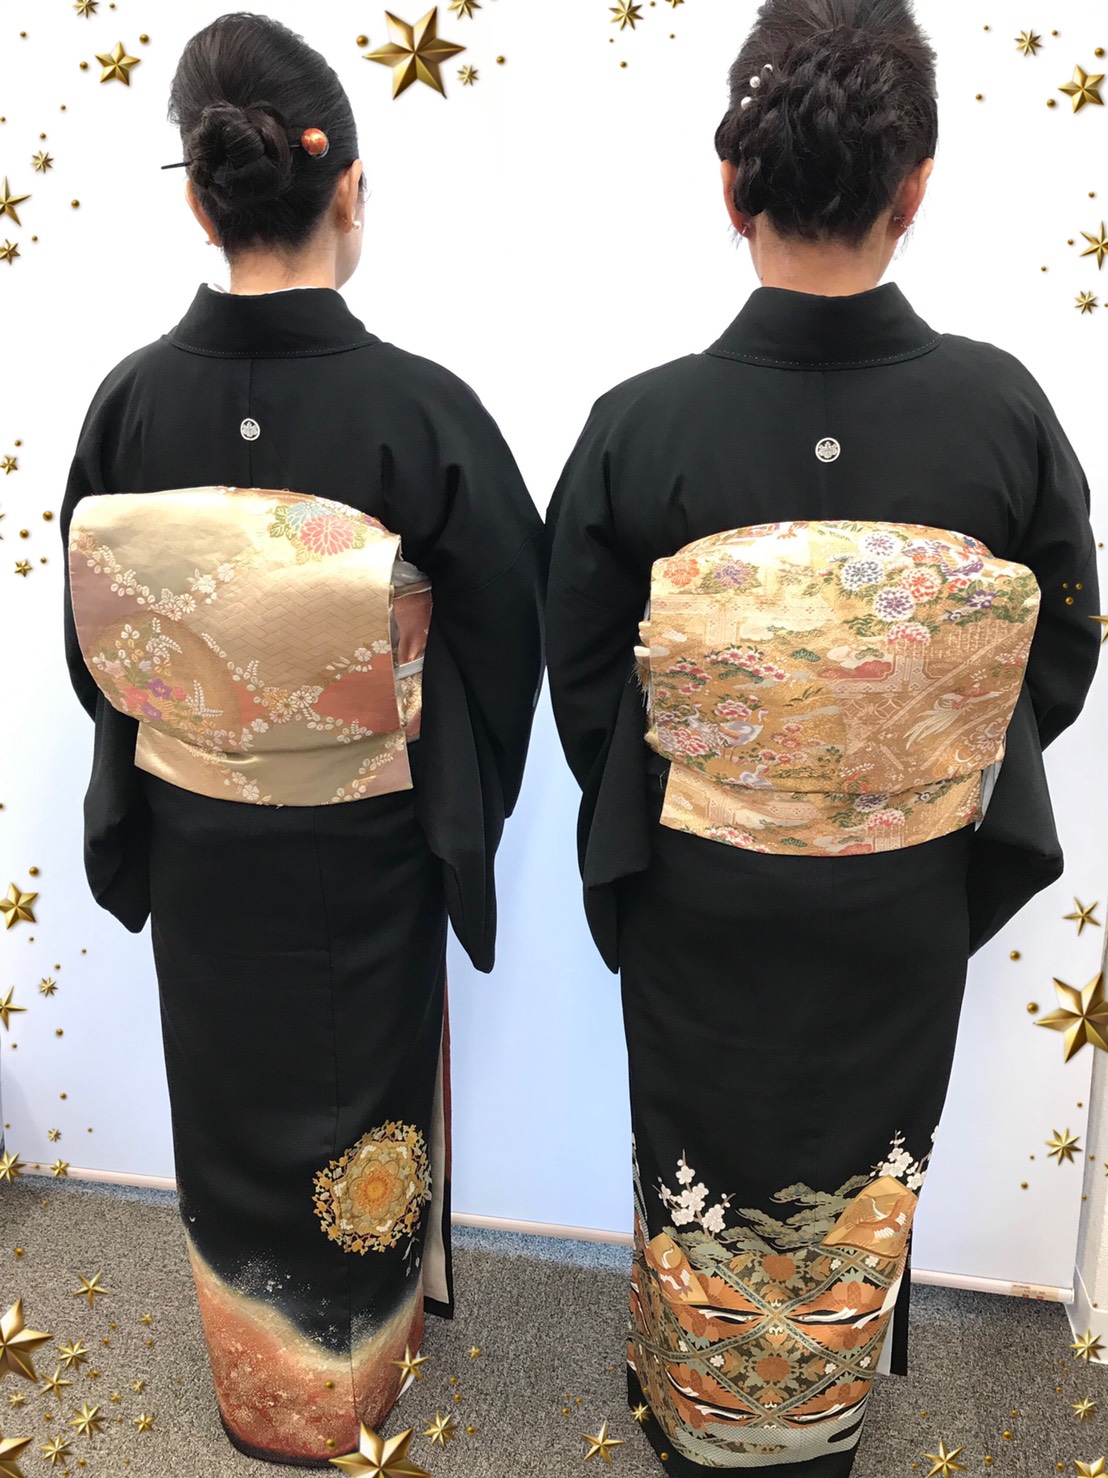 極地 いいね に 息子 の 結婚 式 留袖 レンタル aruite.jp